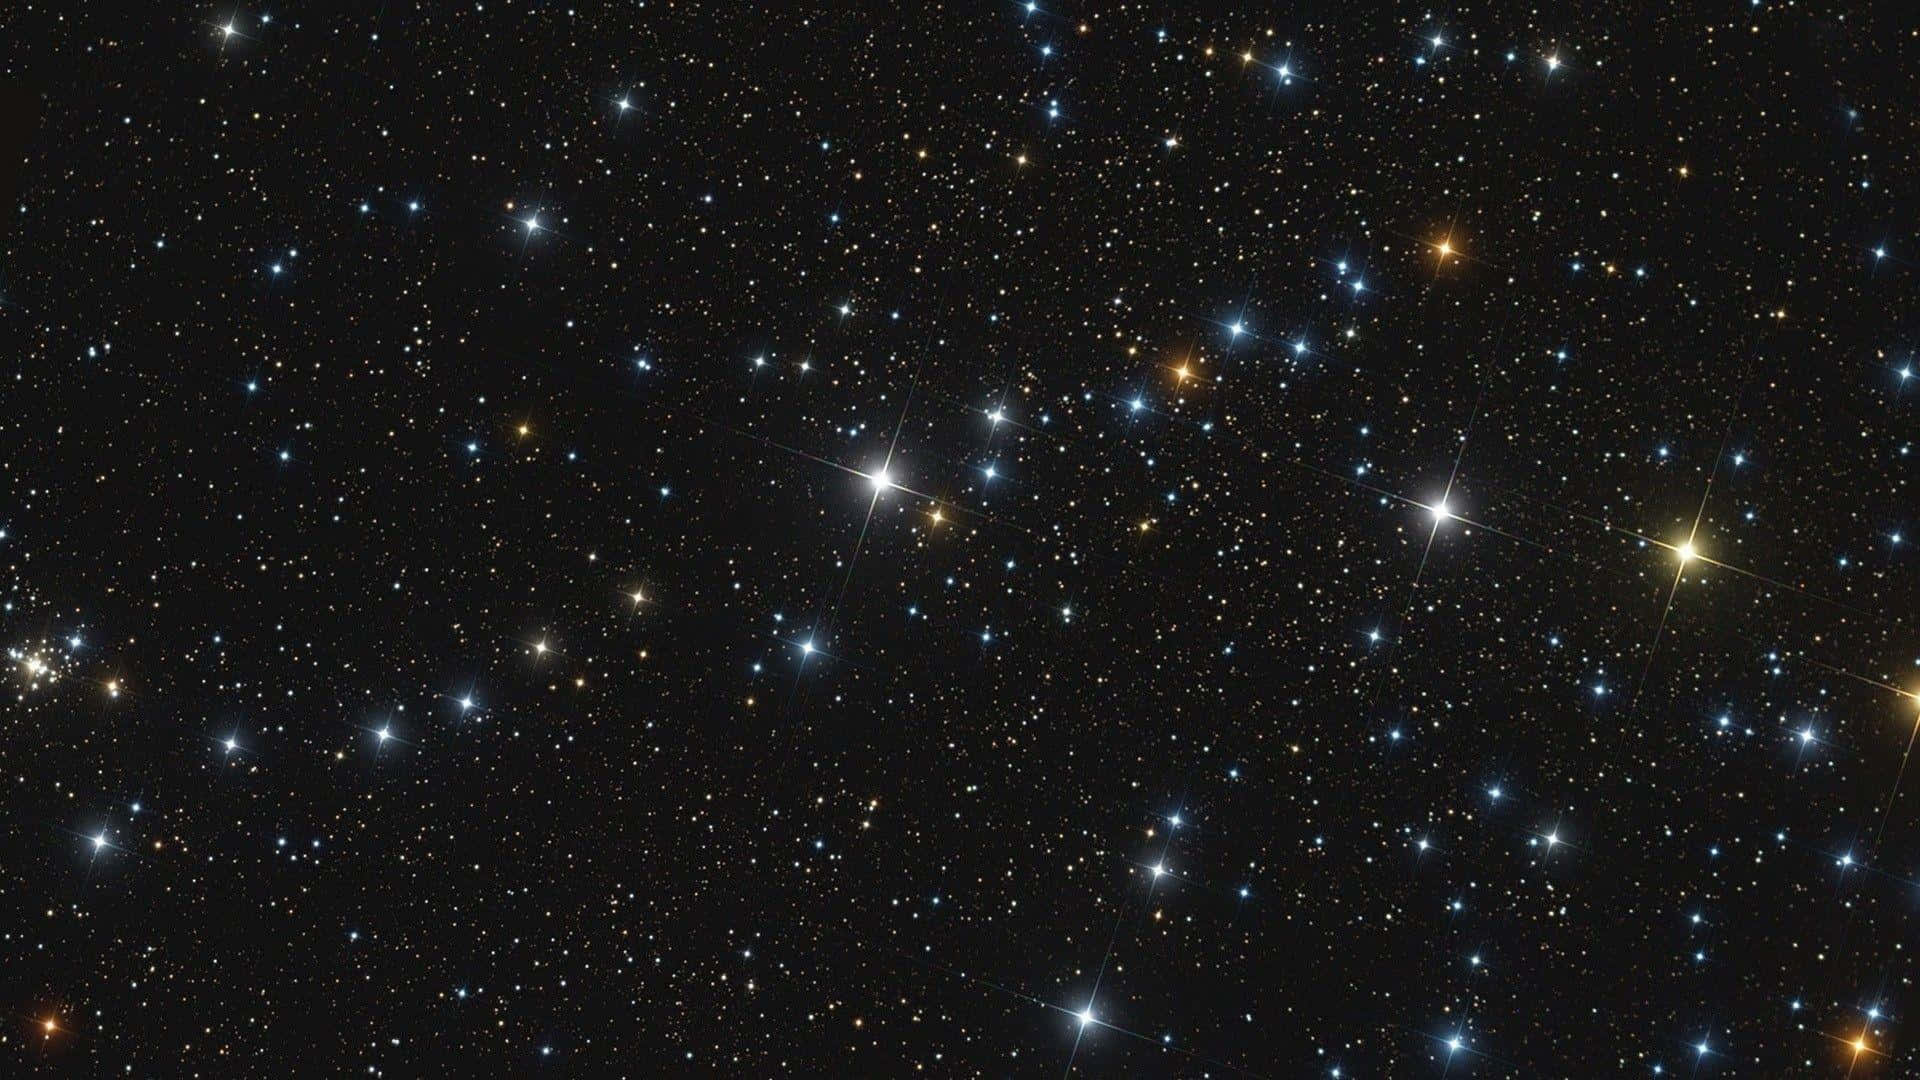 Stjernebilleder fra rummet